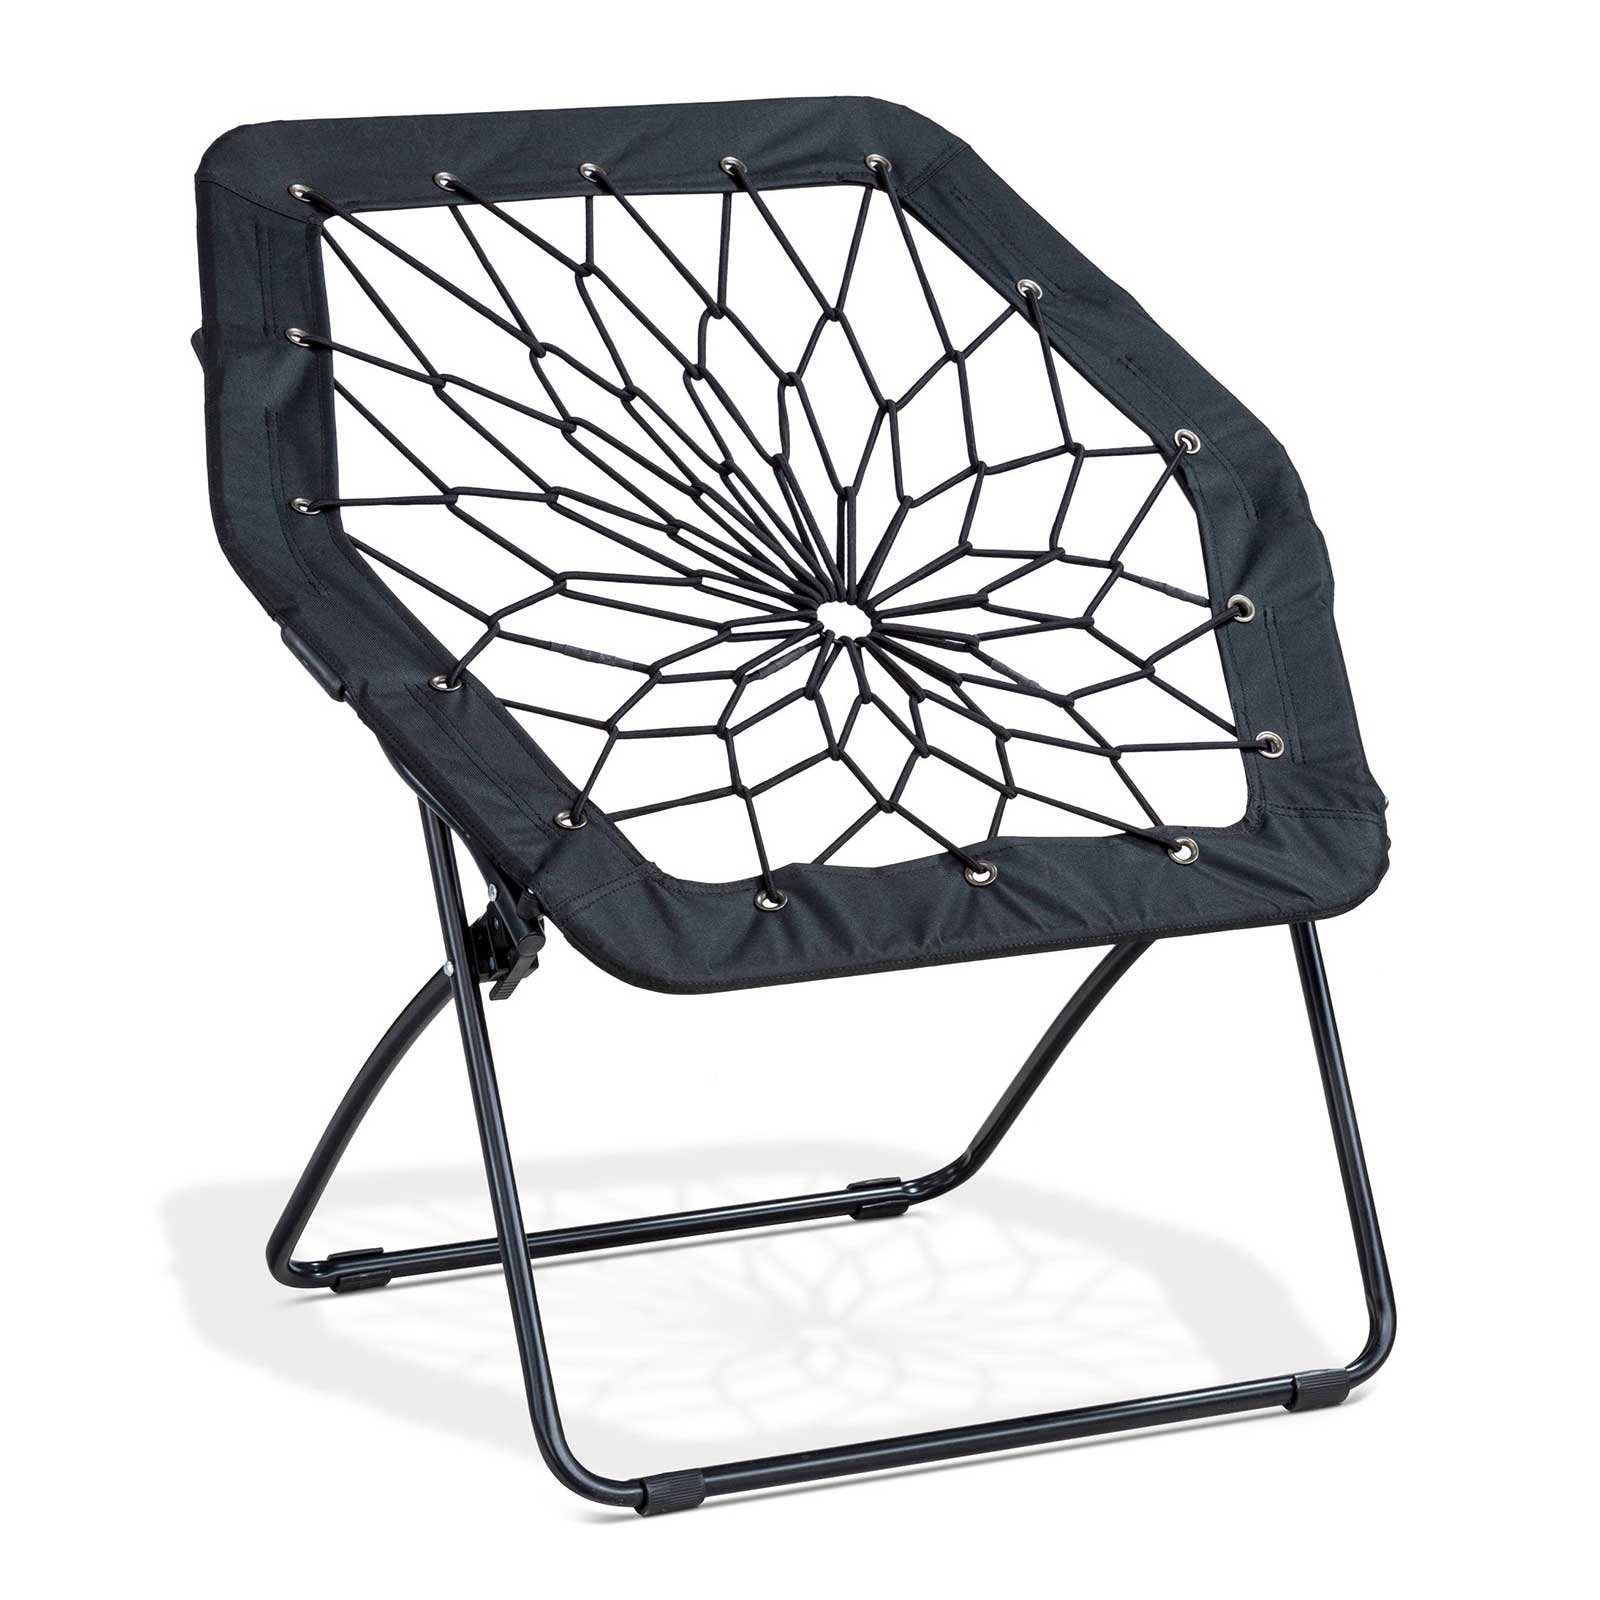 bunjo chair target